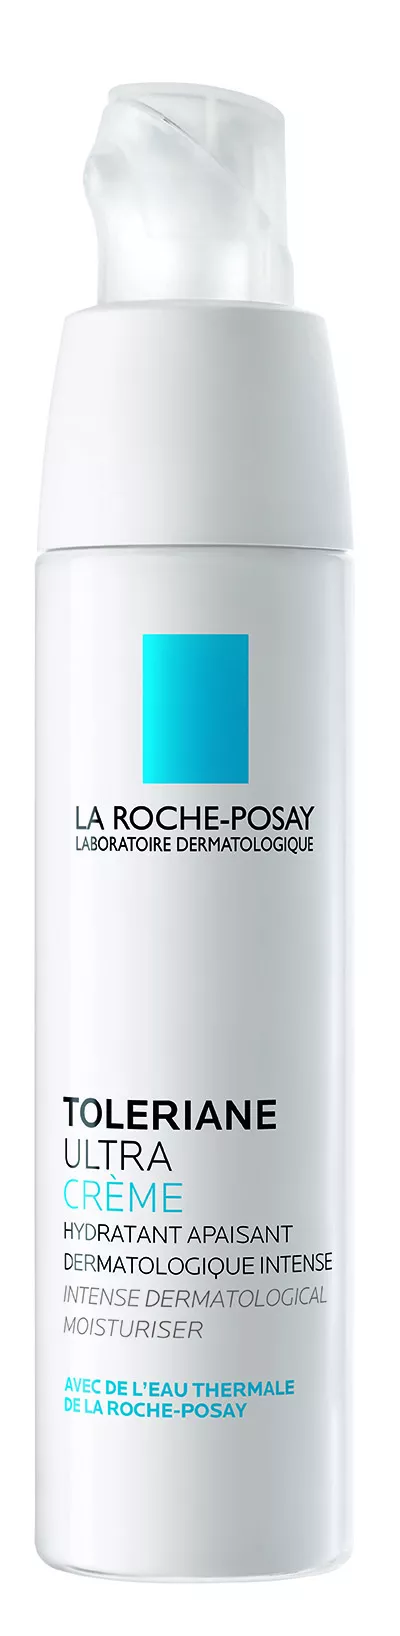 LA ROCHE-POSAY Toleriane Ultra crema x 40ml